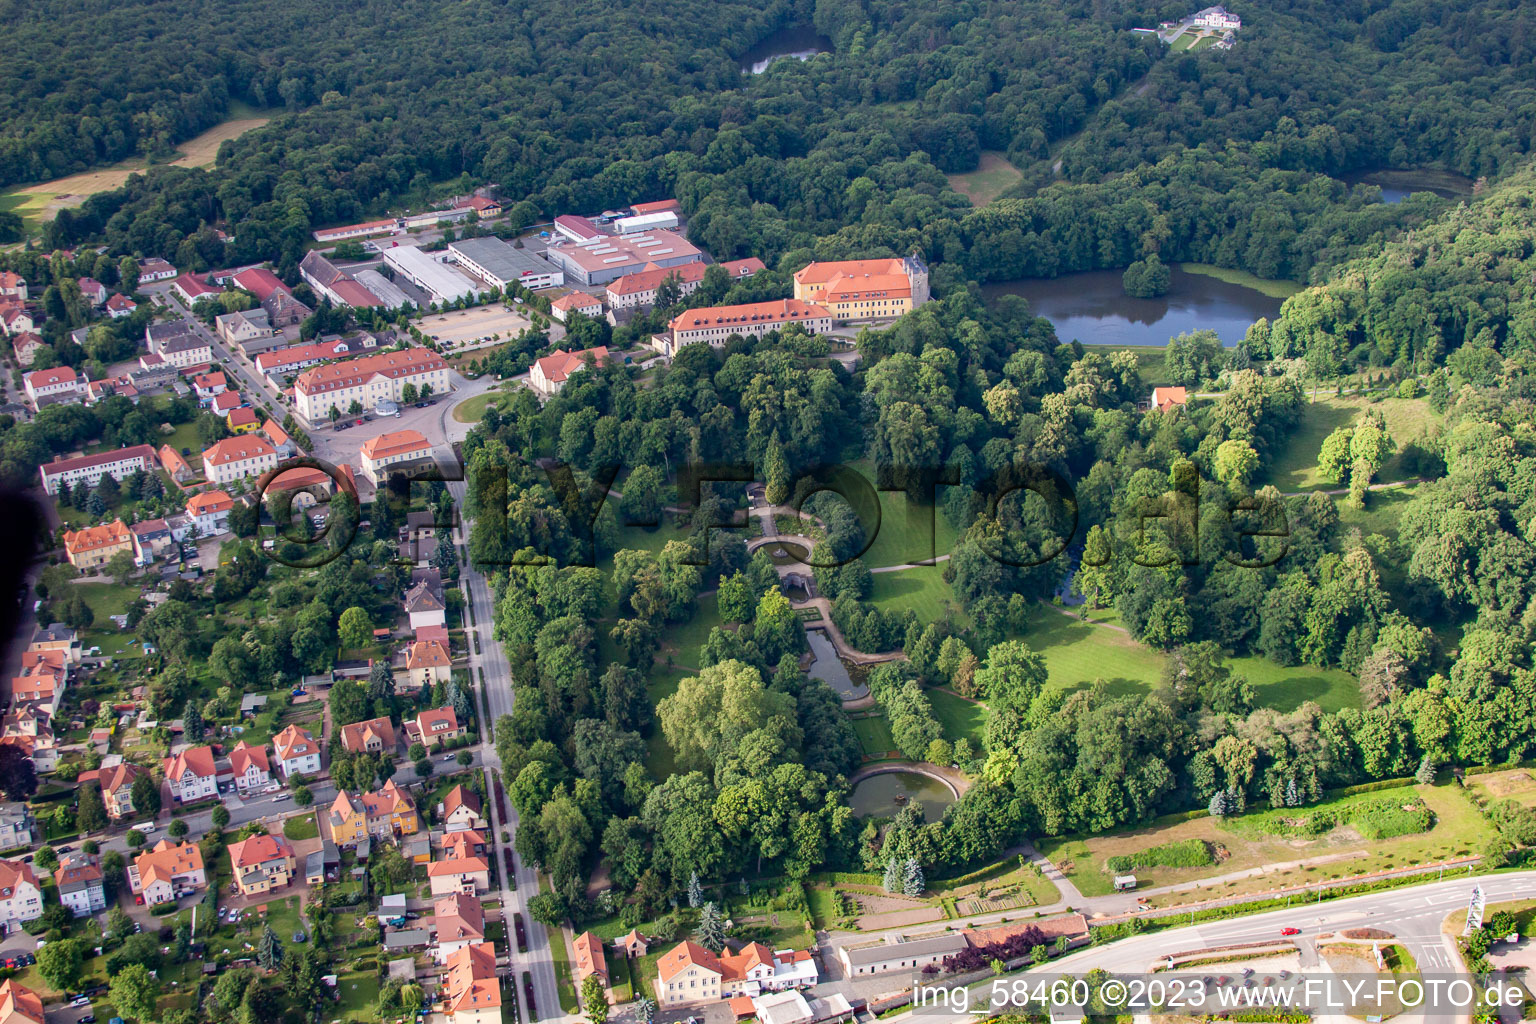 Vue aérienne de Château et parc à Ballenstedt dans le département Saxe-Anhalt, Allemagne